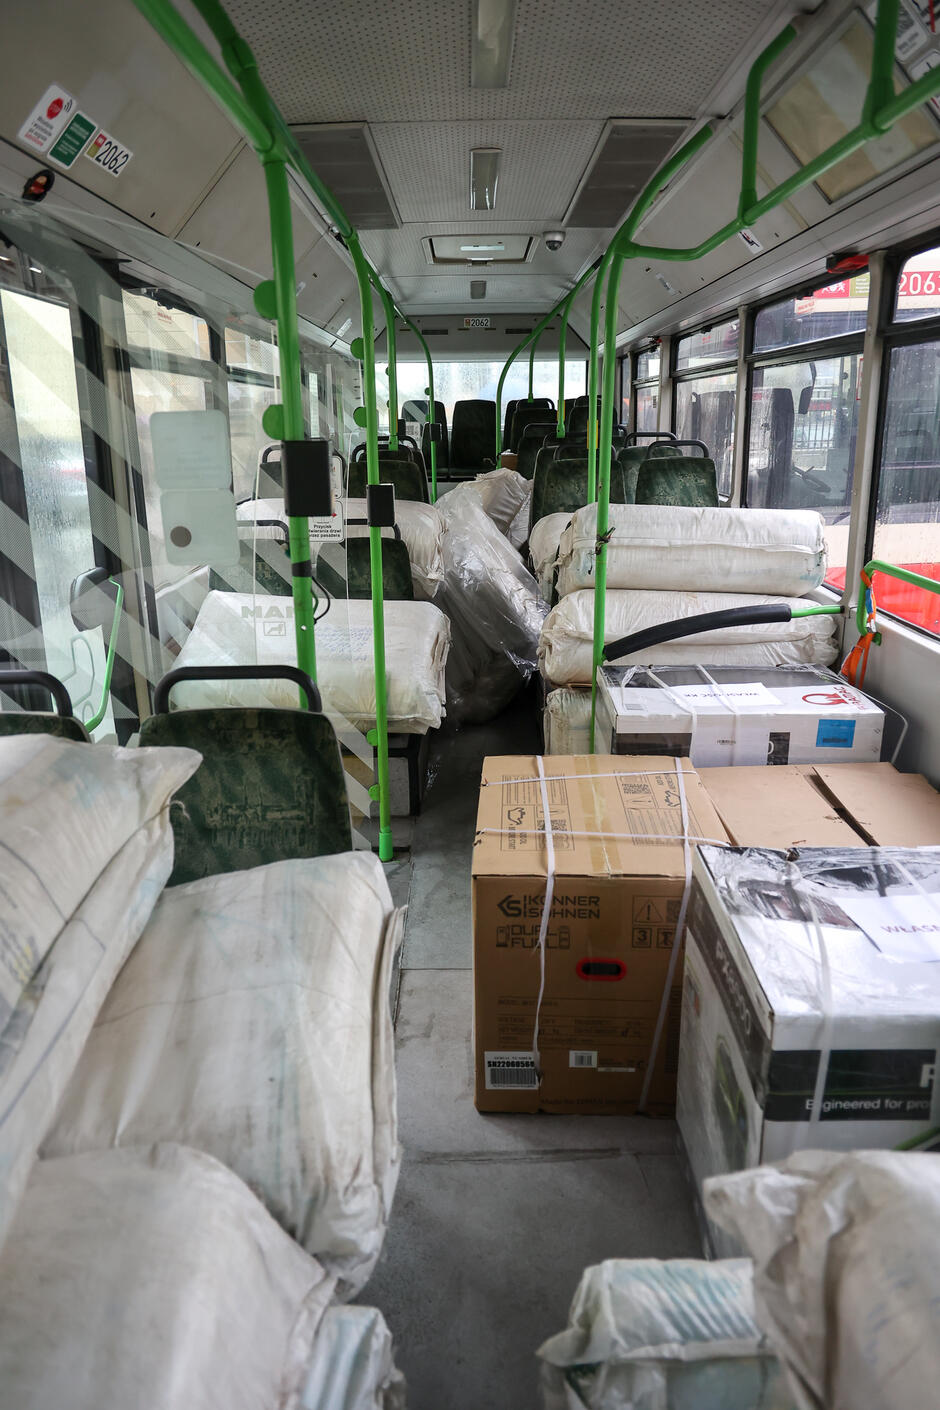 Wnętrze autobusu, w którym leżą kartony i wypełnione czymś worki 